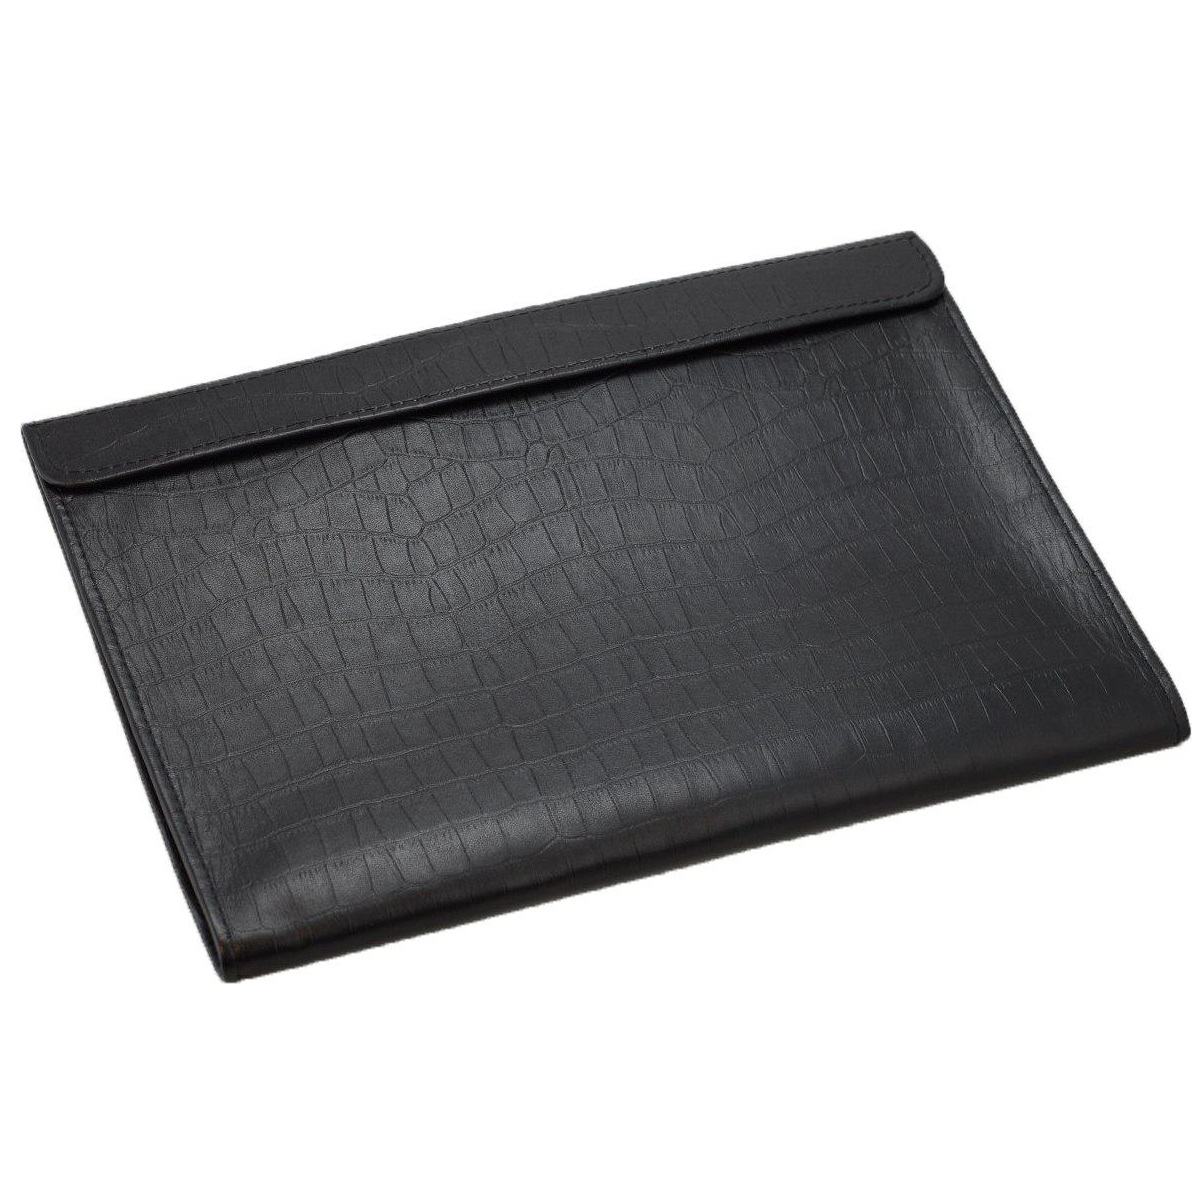 Кожаный чехол-конверт Alexander Croco Black для Macbook Air 13/Macbook Pro 13